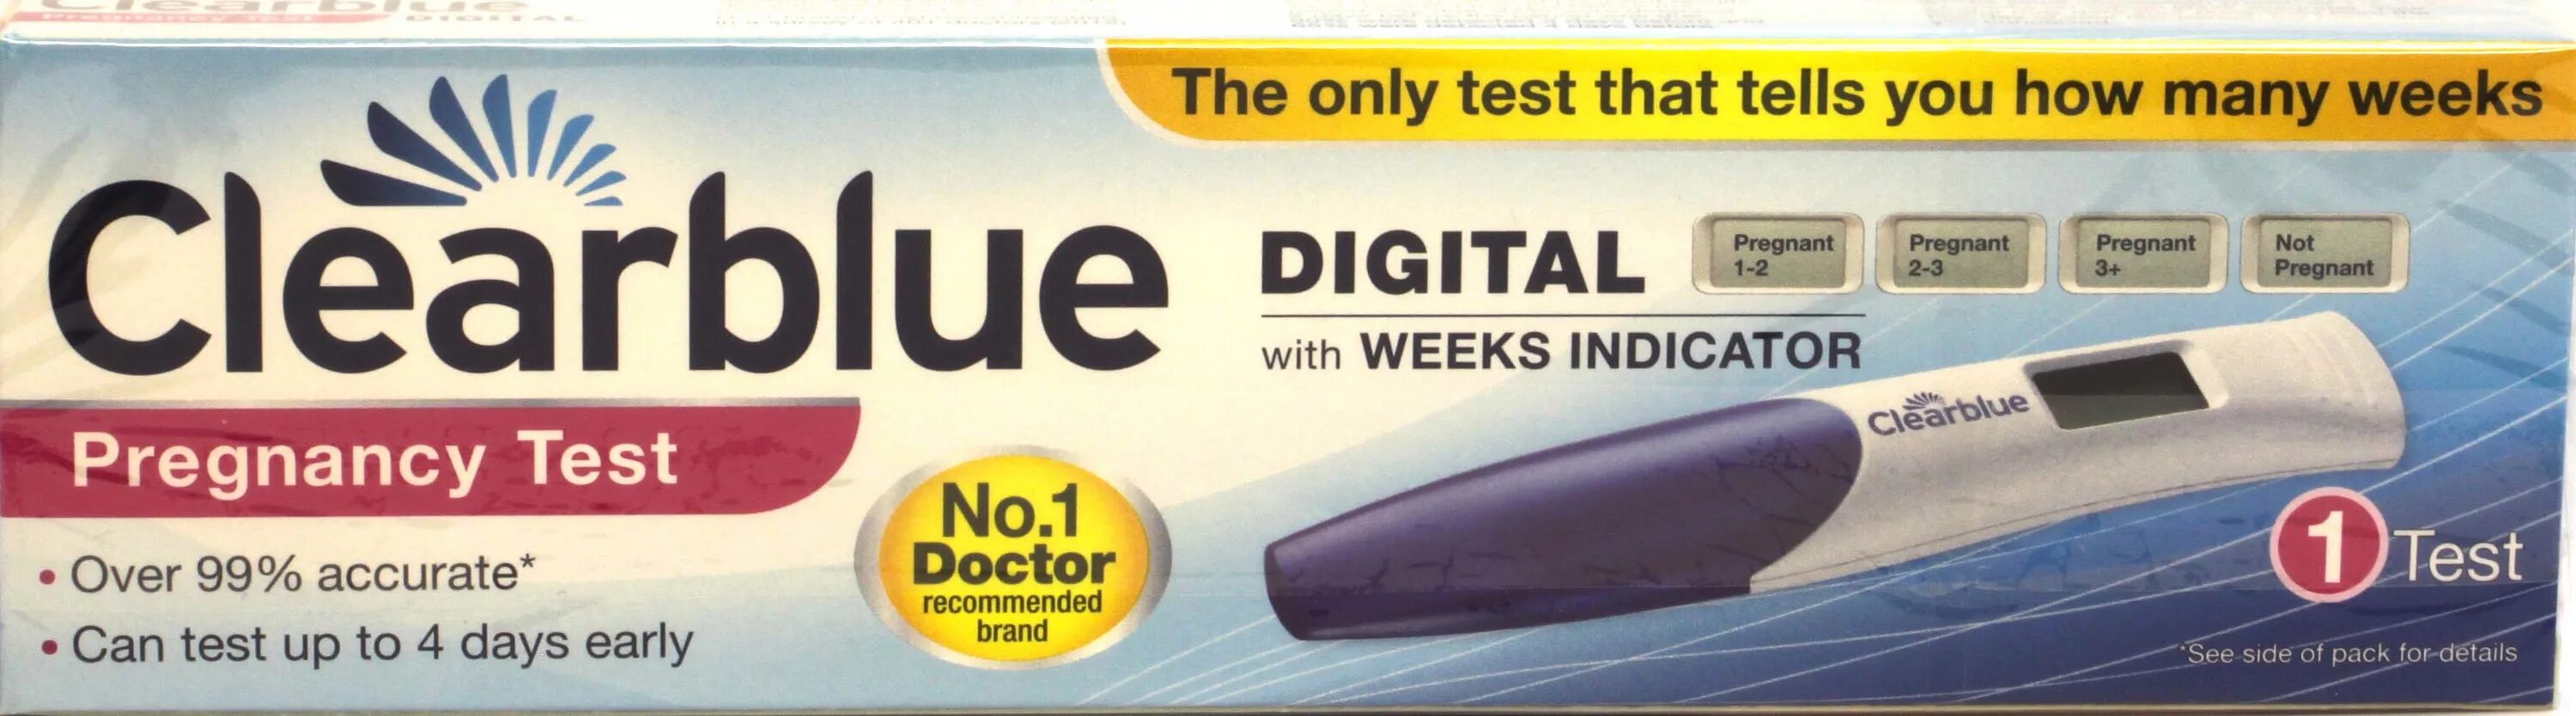 Купить тест с доставкой. Клиаблу тест на беременность. Цифровой тест на беременность Clearblue. Тест Clearblue Plus на беременность. Тест на беременность Clearblue цифровой с индикатором срока.